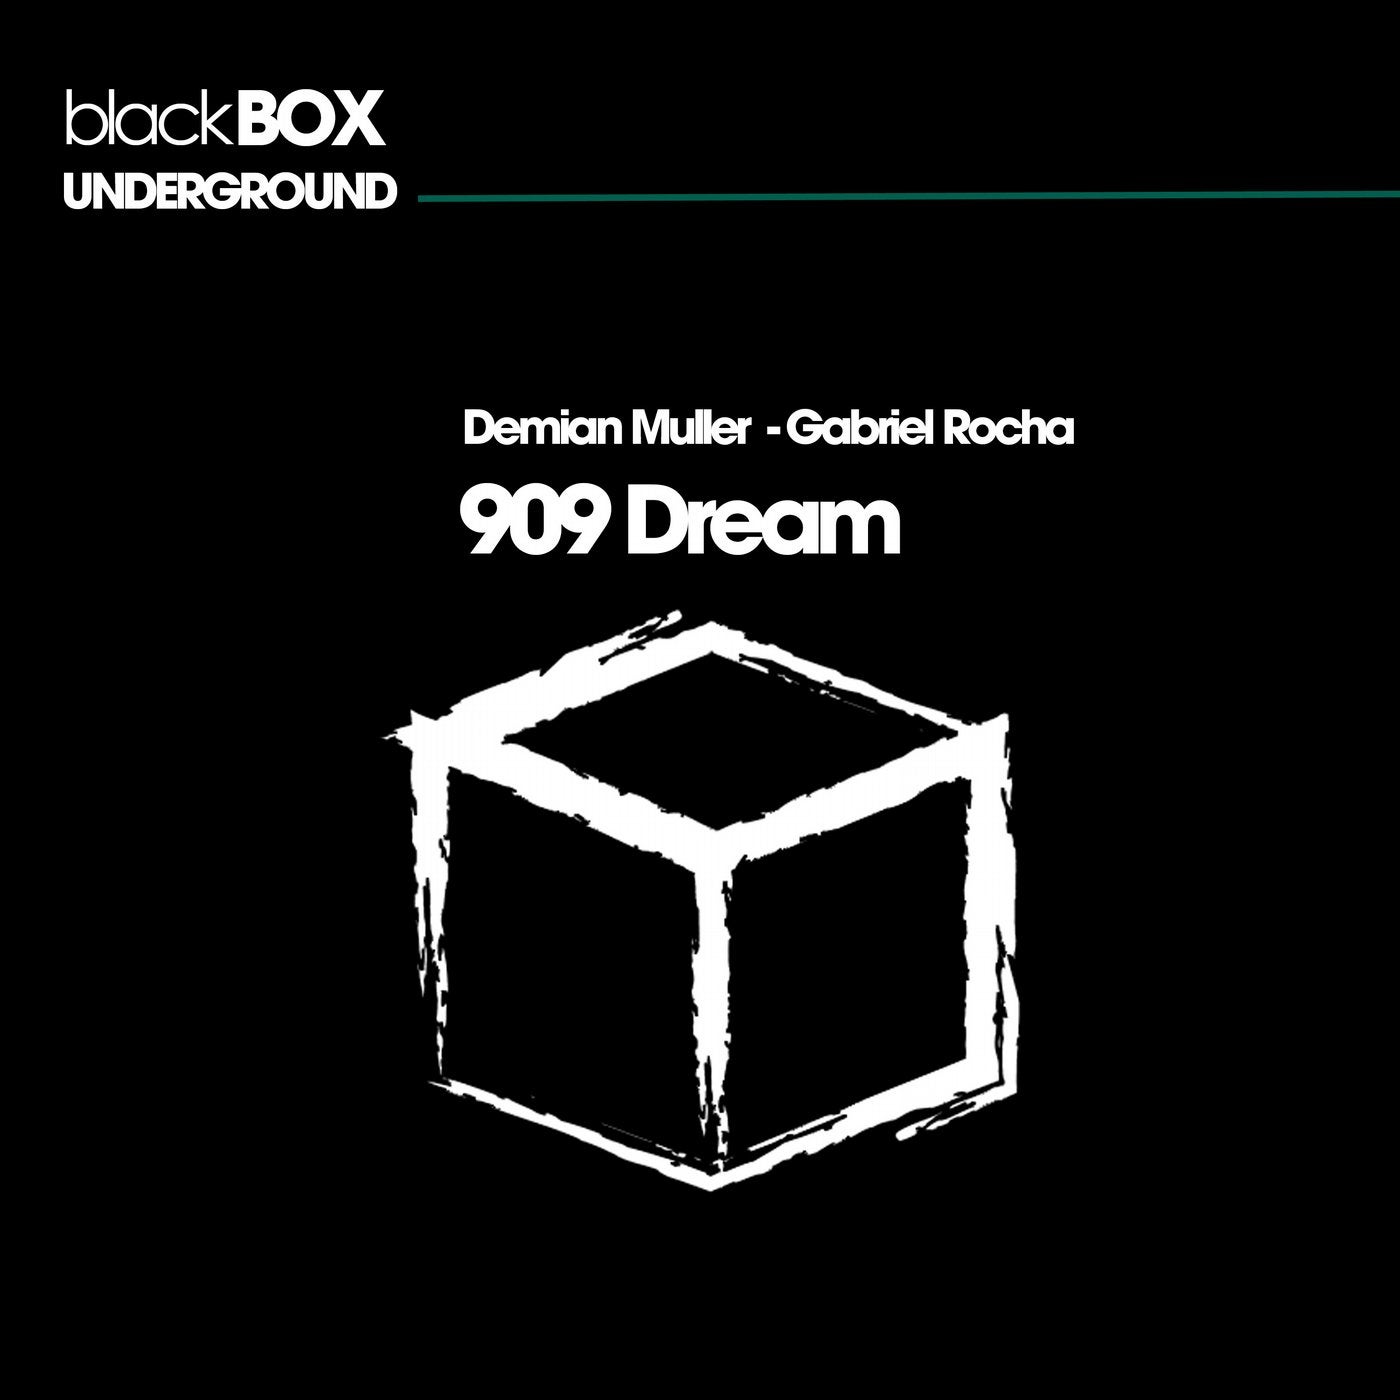 909 Dream